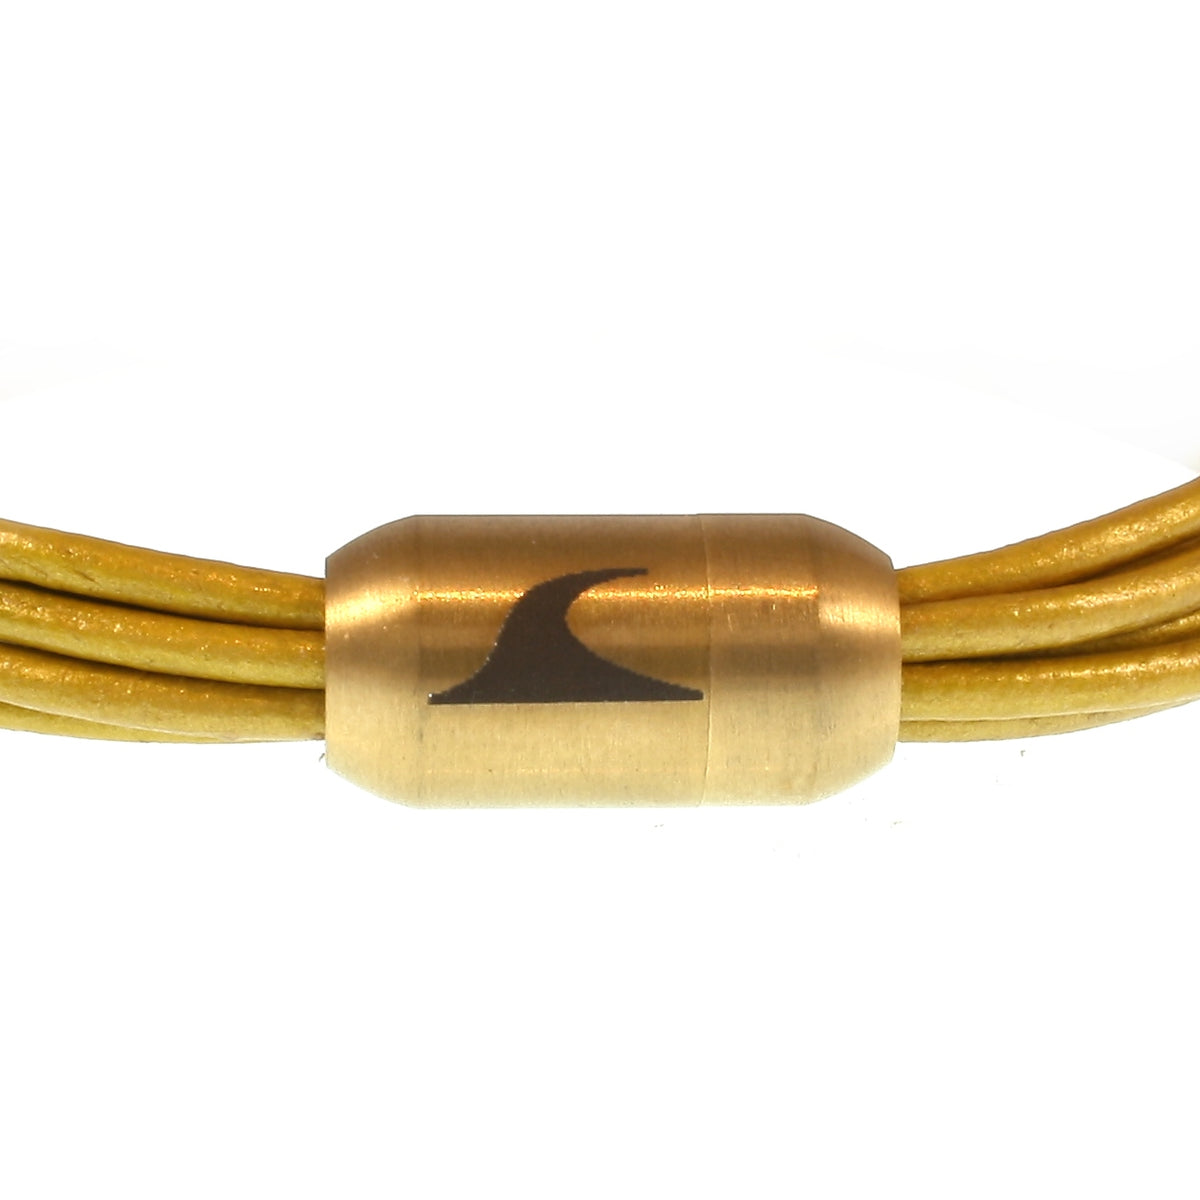 Damen-Leder-armband-fem-gold-Edelstahlverschluss-detail-wavepirate-shop-r